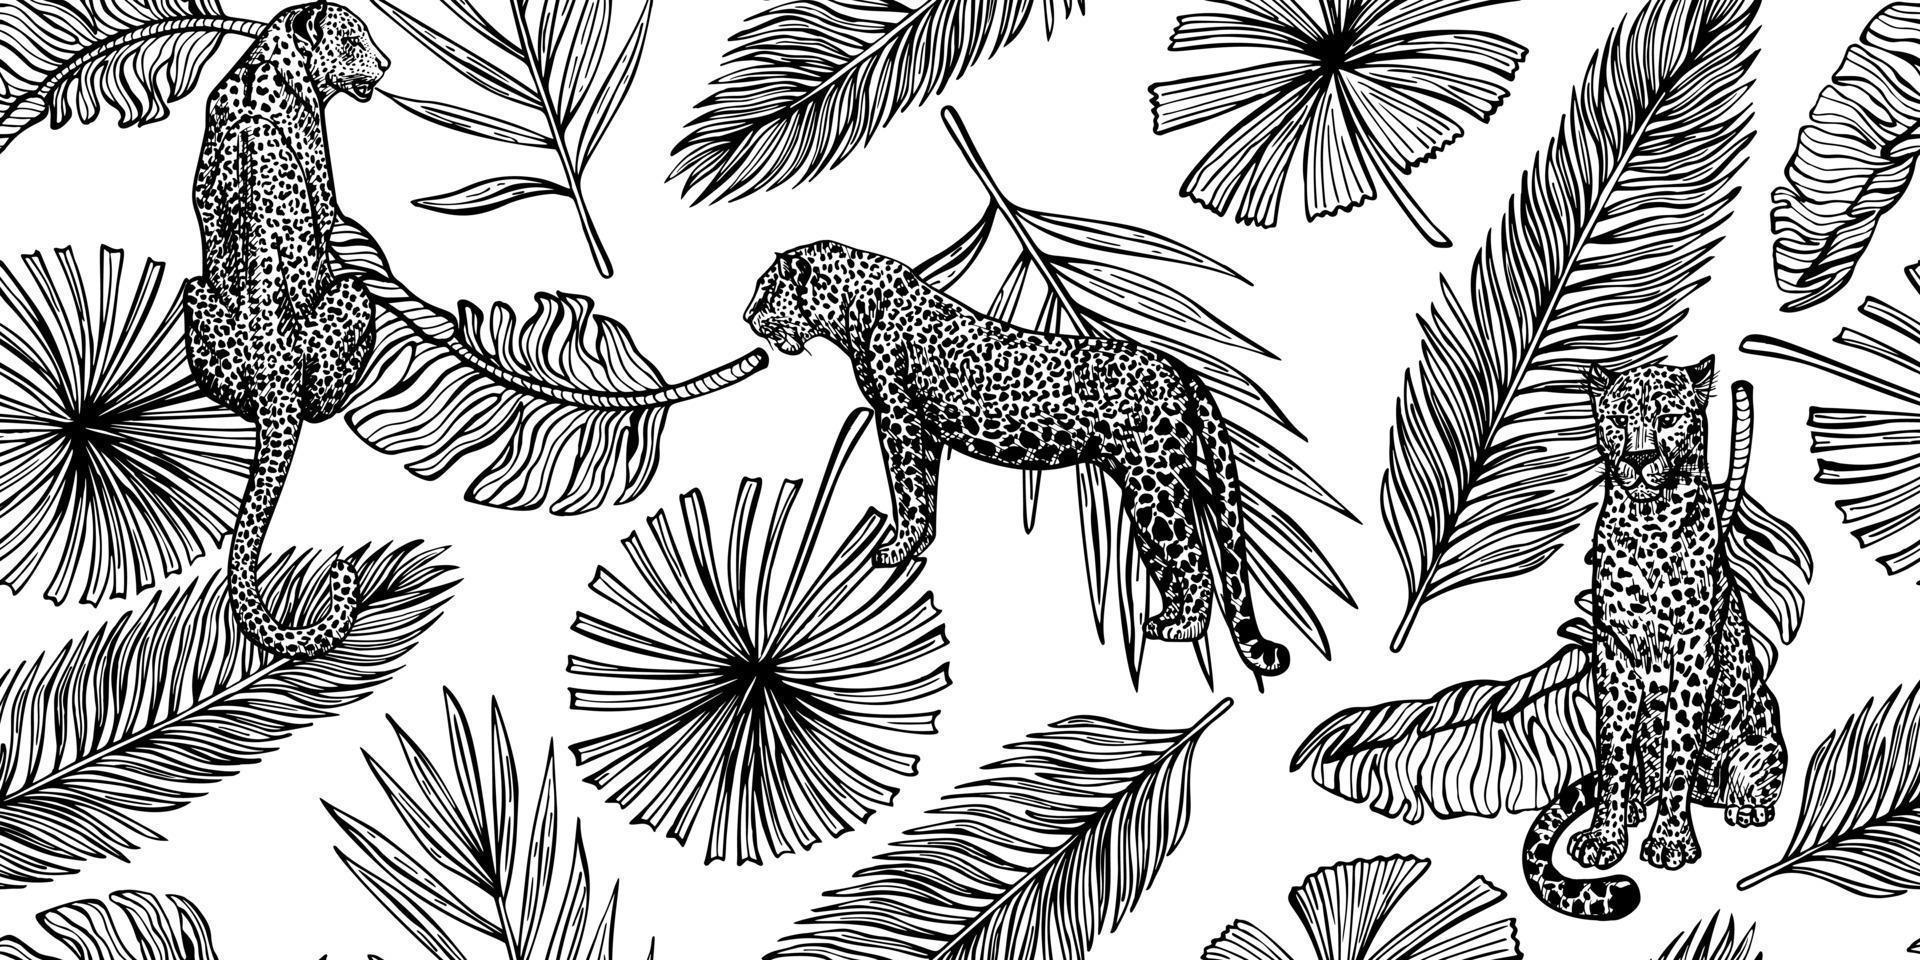 padrão sem emenda da vida selvagem de savana. leopardo vintage e folhas de palmeira, banana em estilo de gravura. vetor